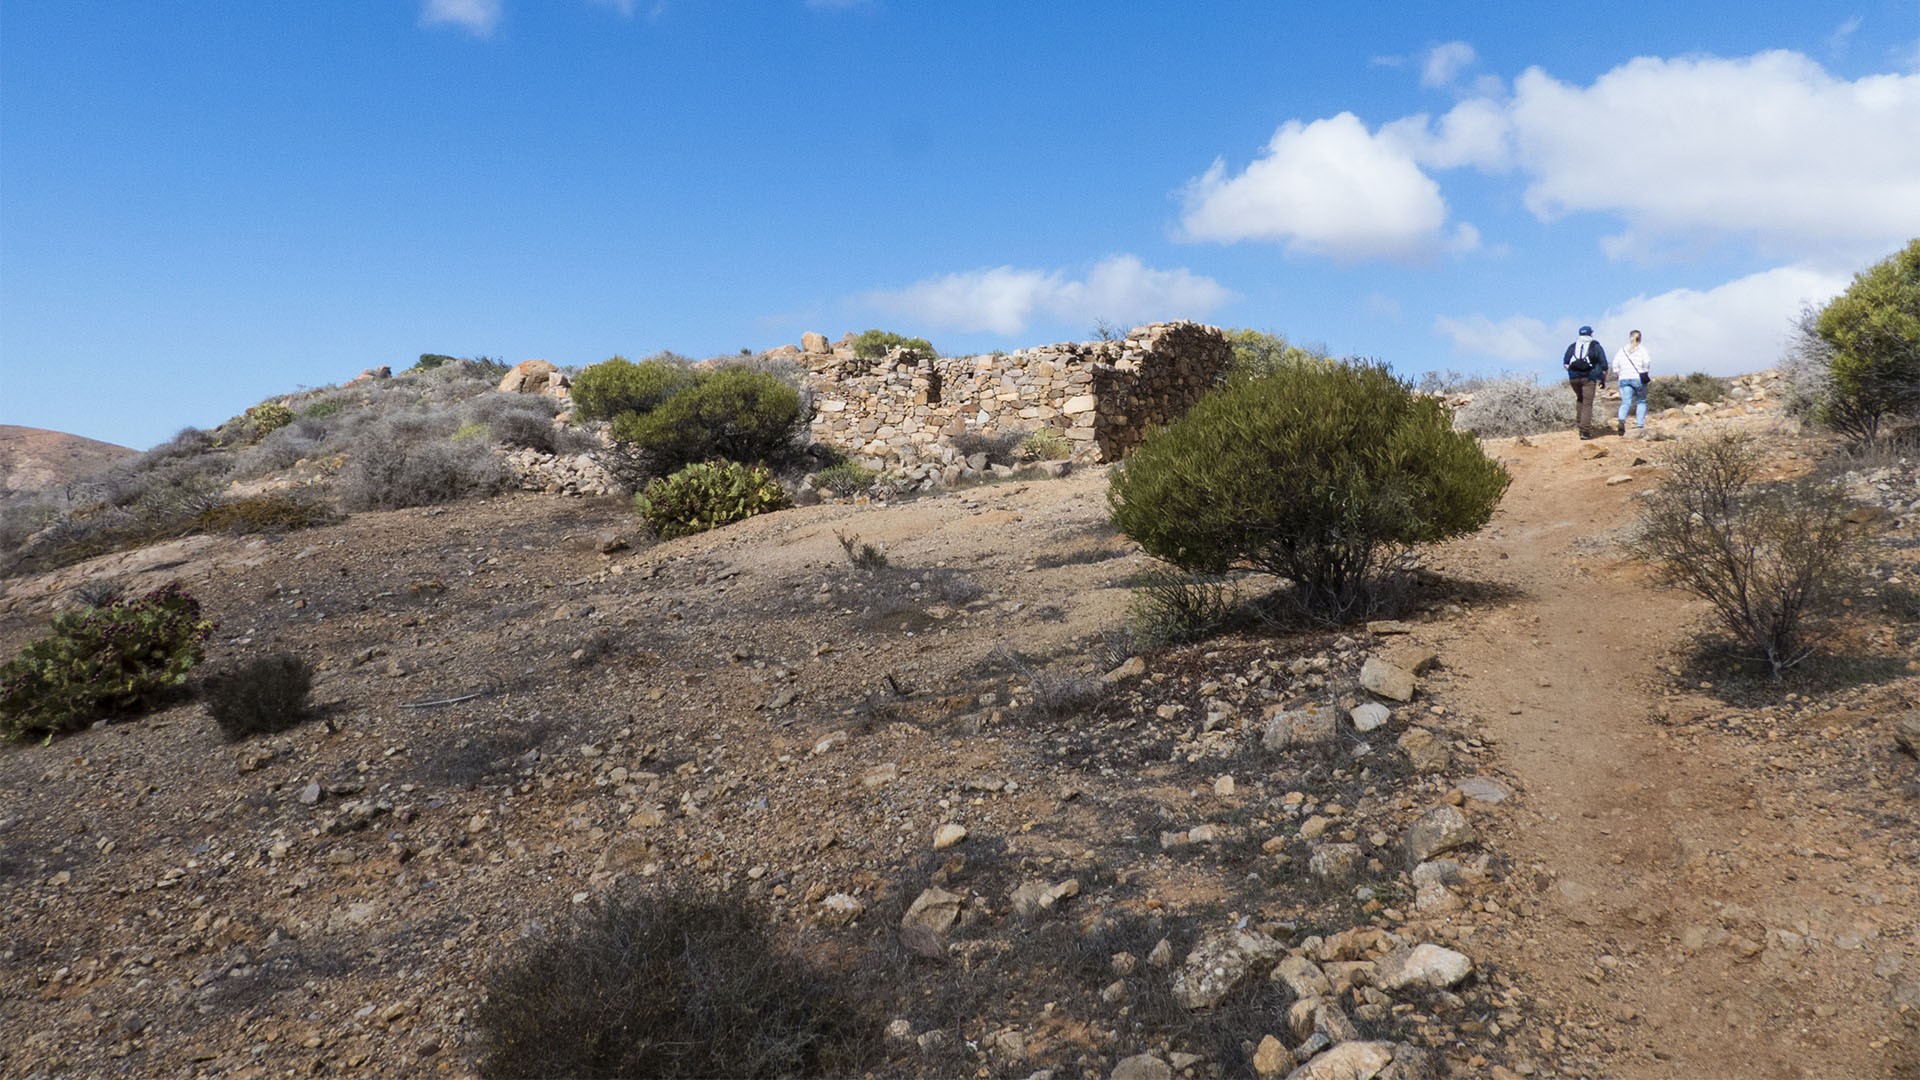 Sehenswürdigkeiten Fuerteventuras: Betancuria – Parque rural Parra Medina Betancuria